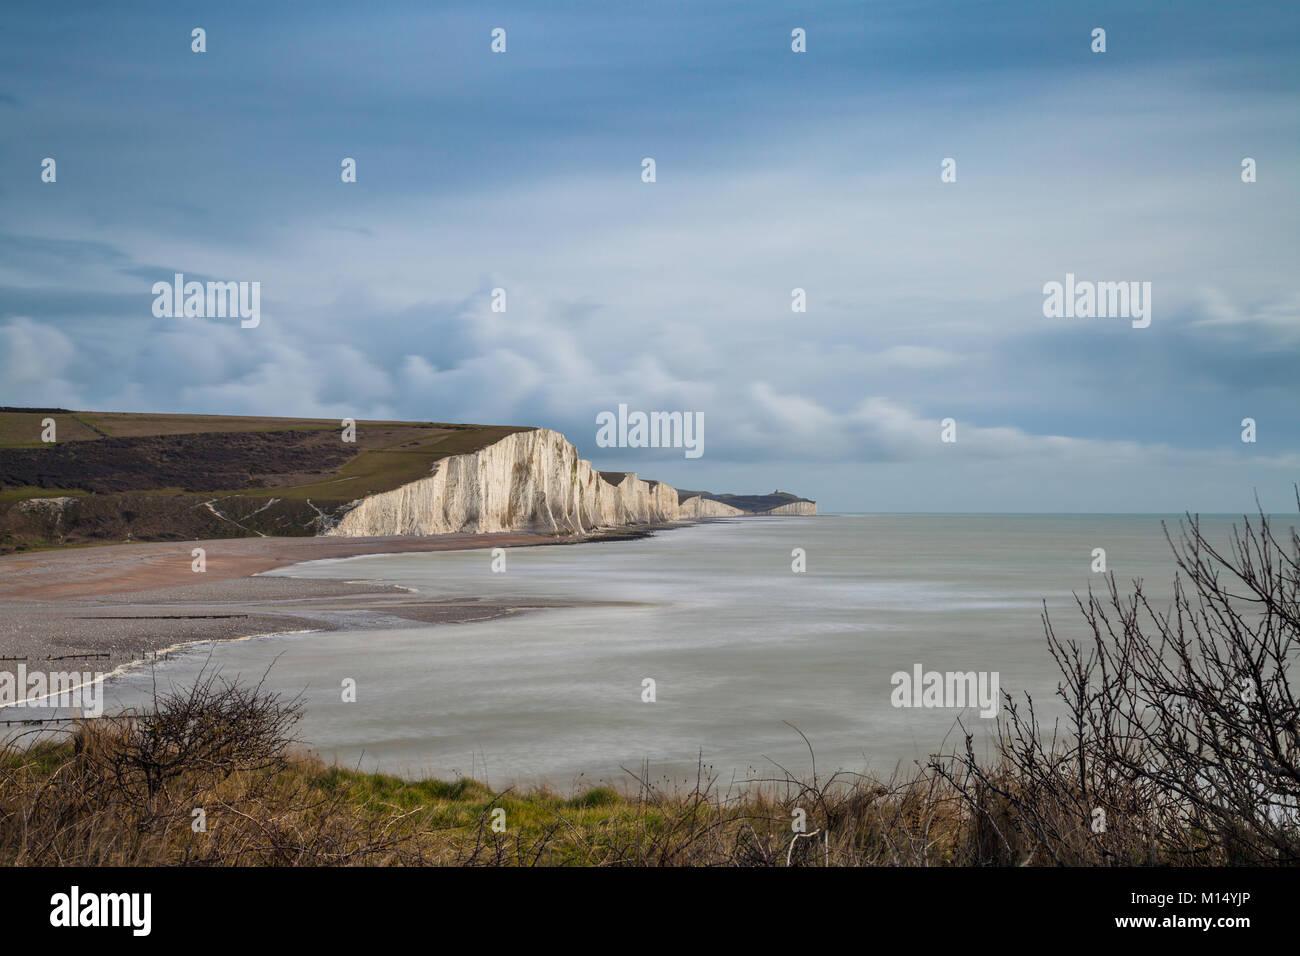 Les sept soeurs des falaises de craie près de Seaford, East Sussex, England, UK Banque D'Images